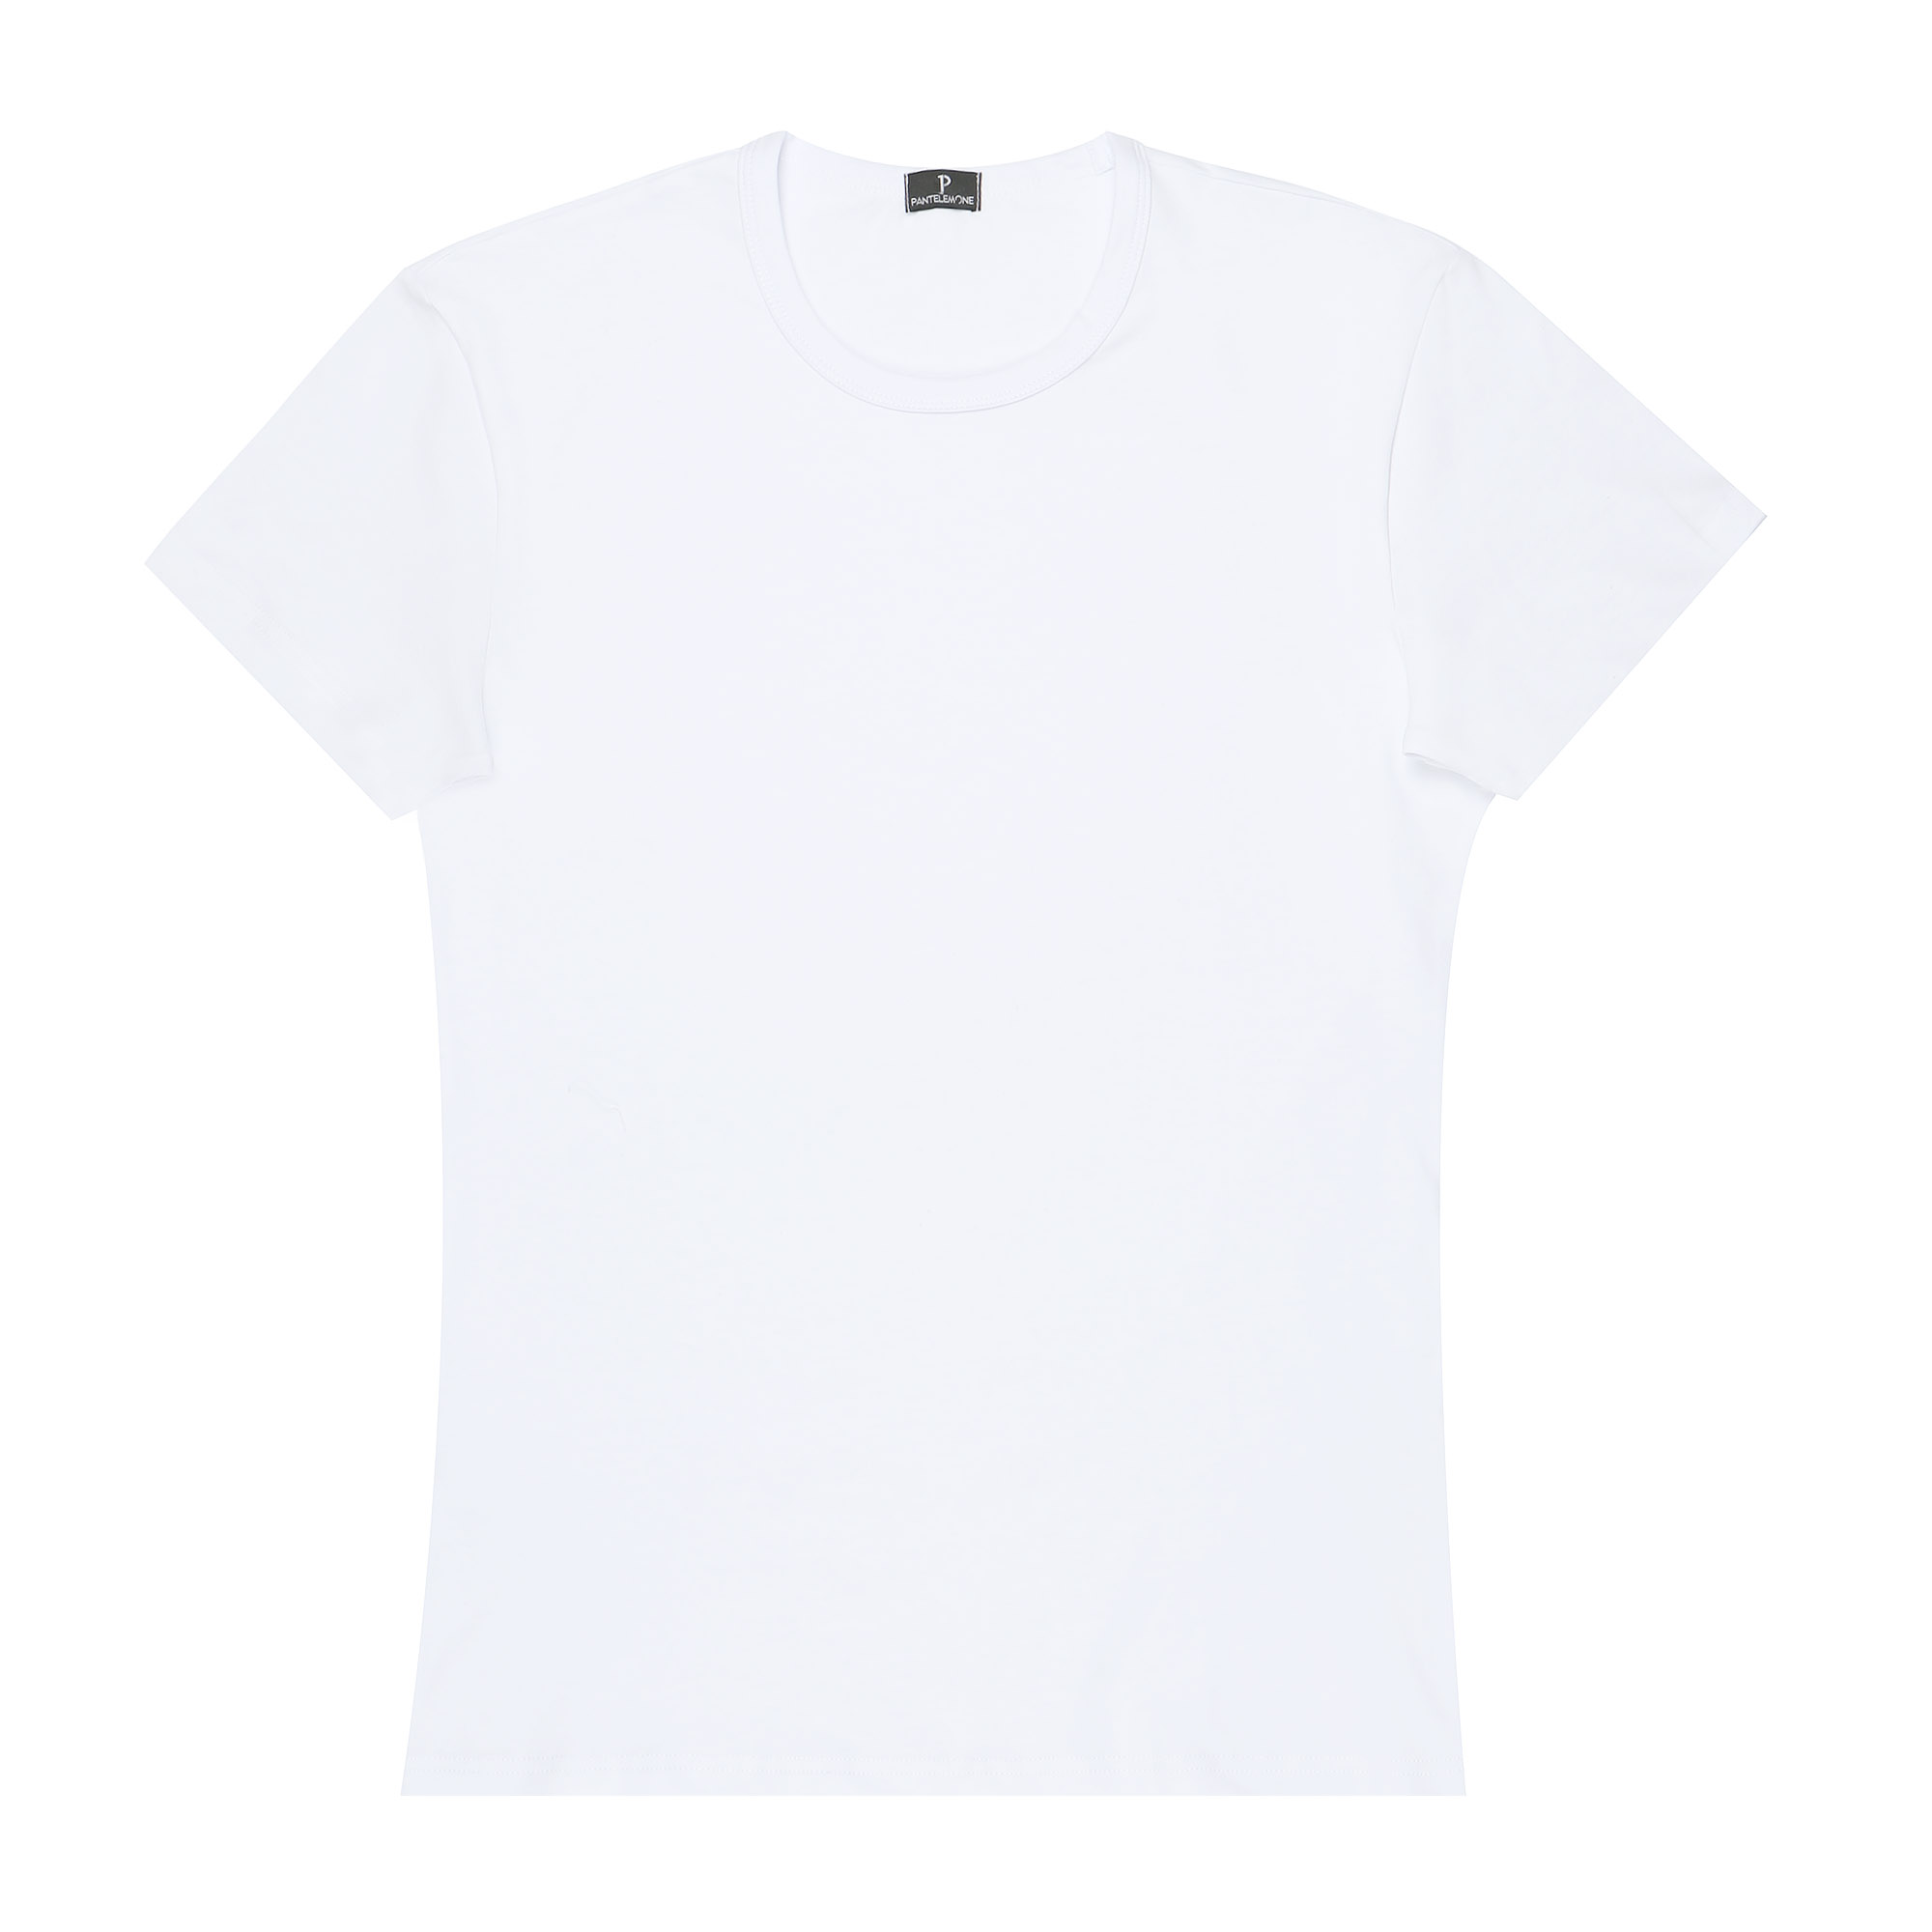 Мужская футболка Pantelemone MF-914 46 белая, цвет белый, размер 46 - фото 1